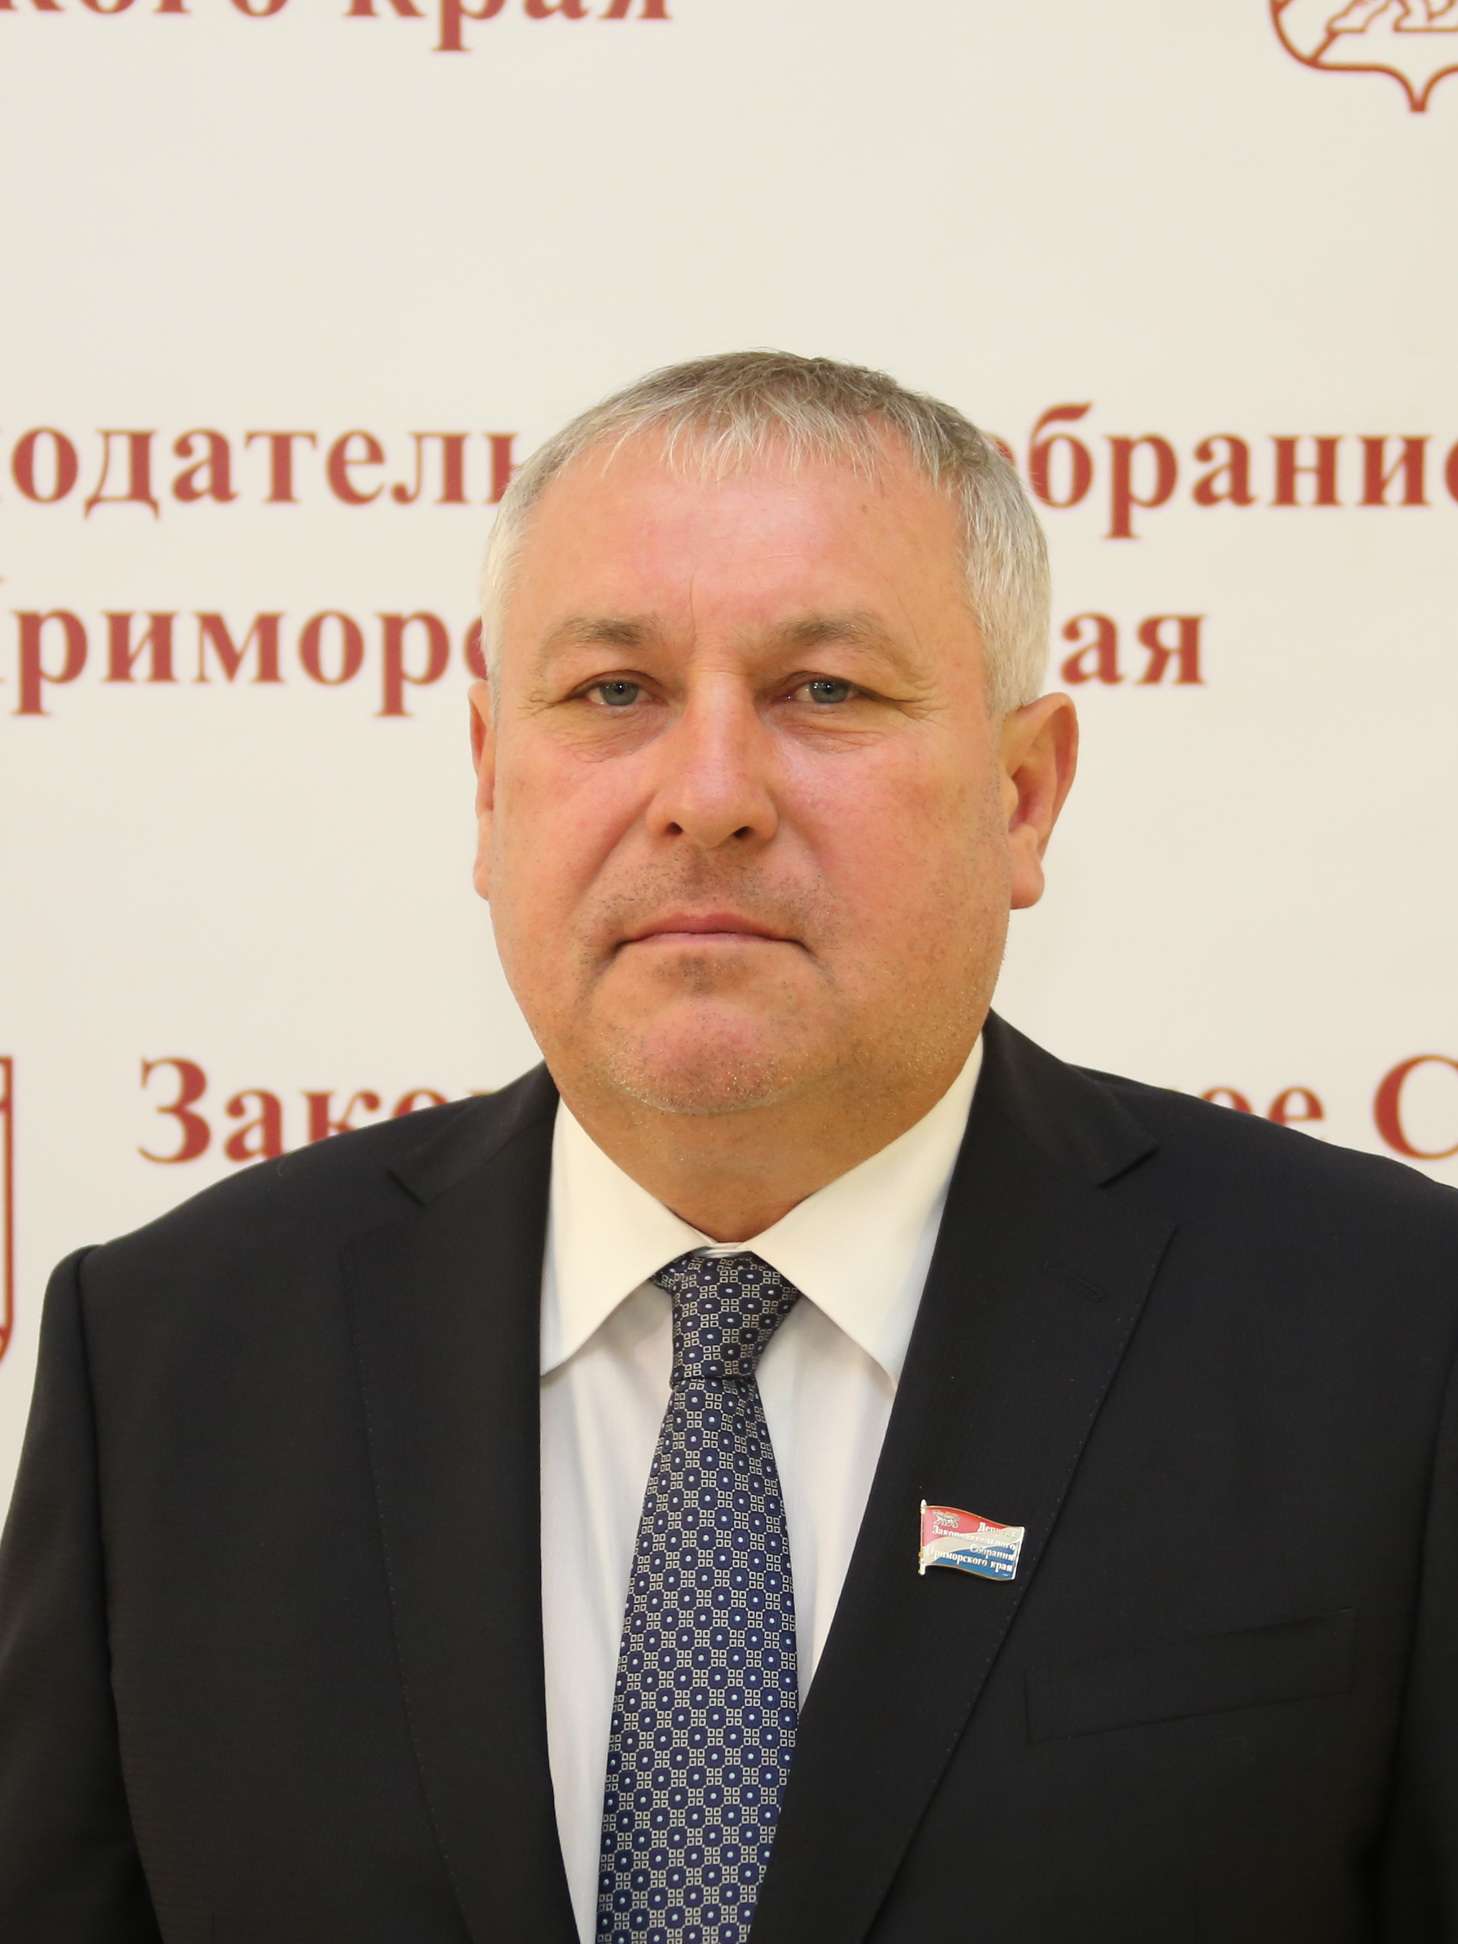 Ткаченко Евгений Геннадьевич